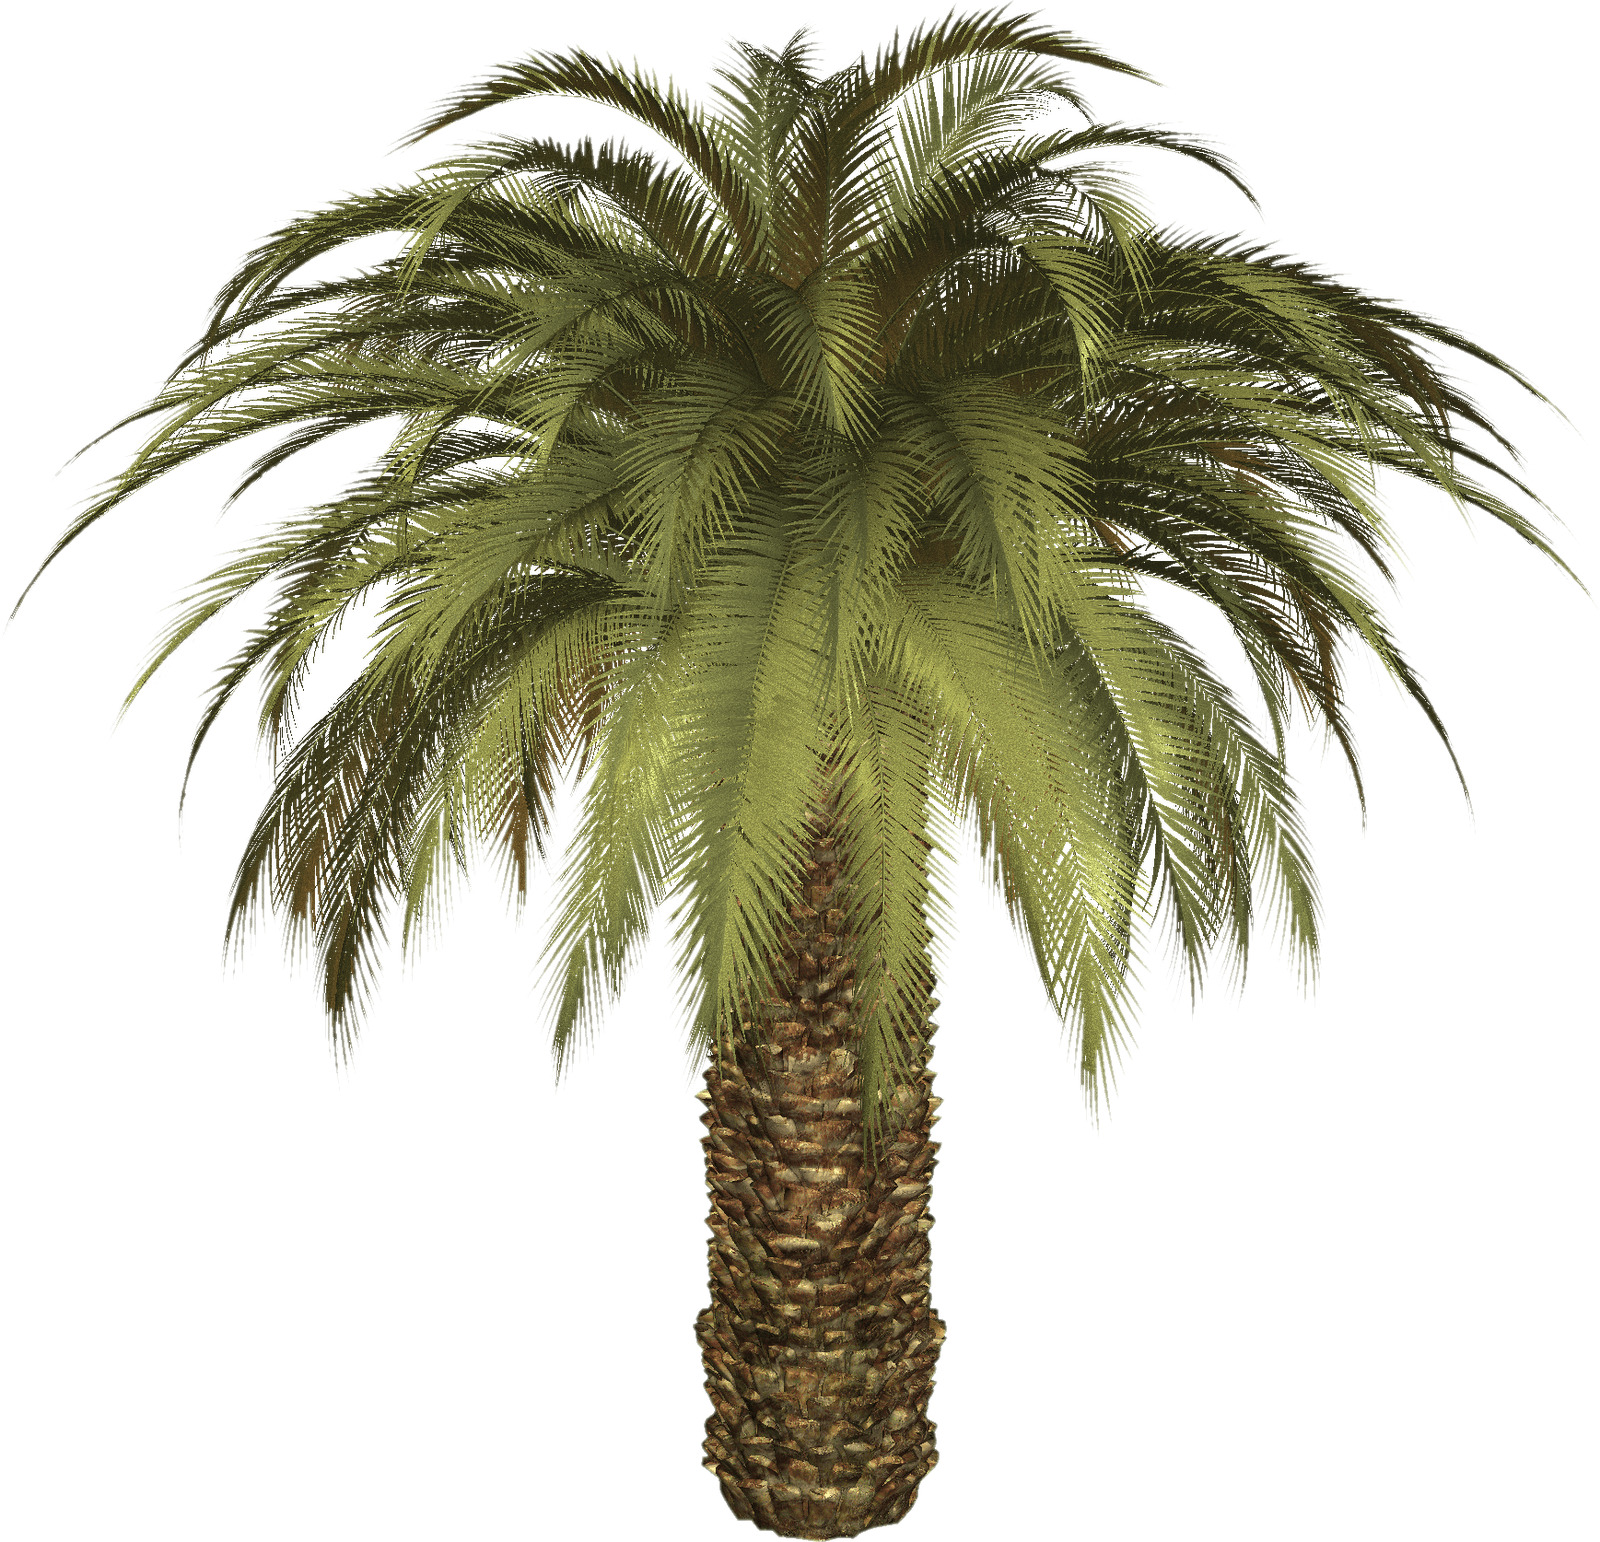 Big Palm Tree icons